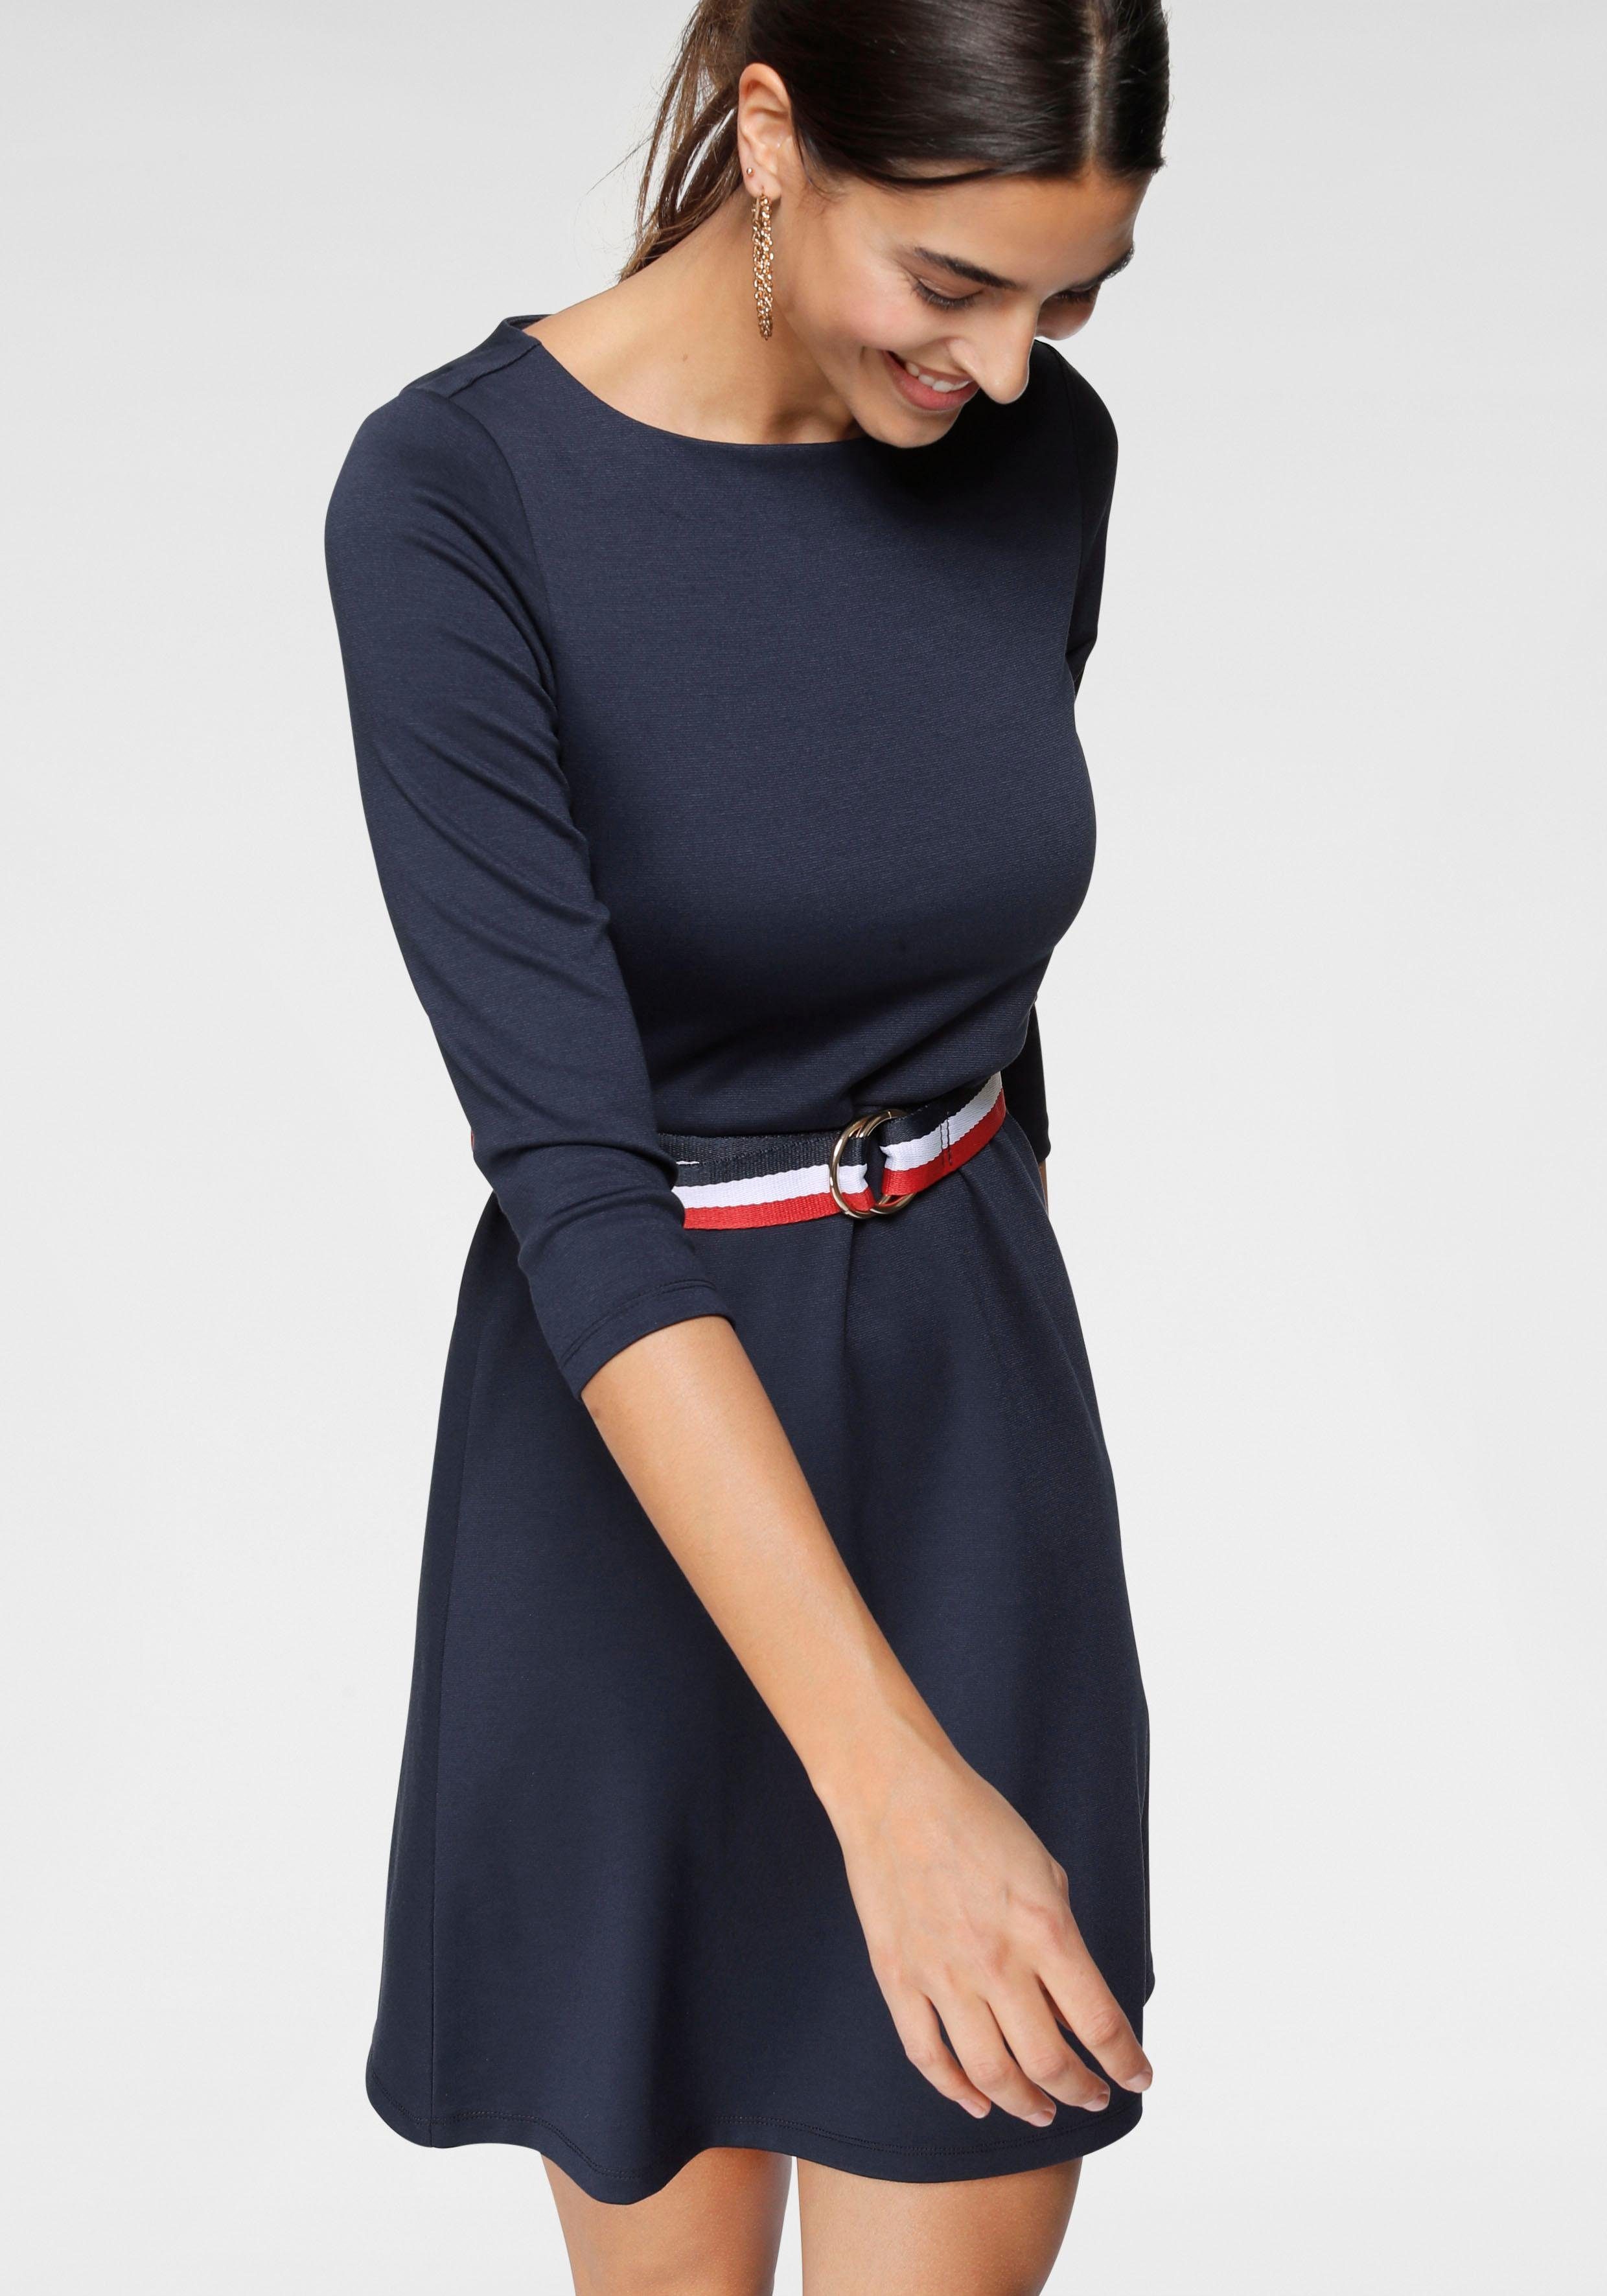 Blaues Kleid online kaufen | OTTO